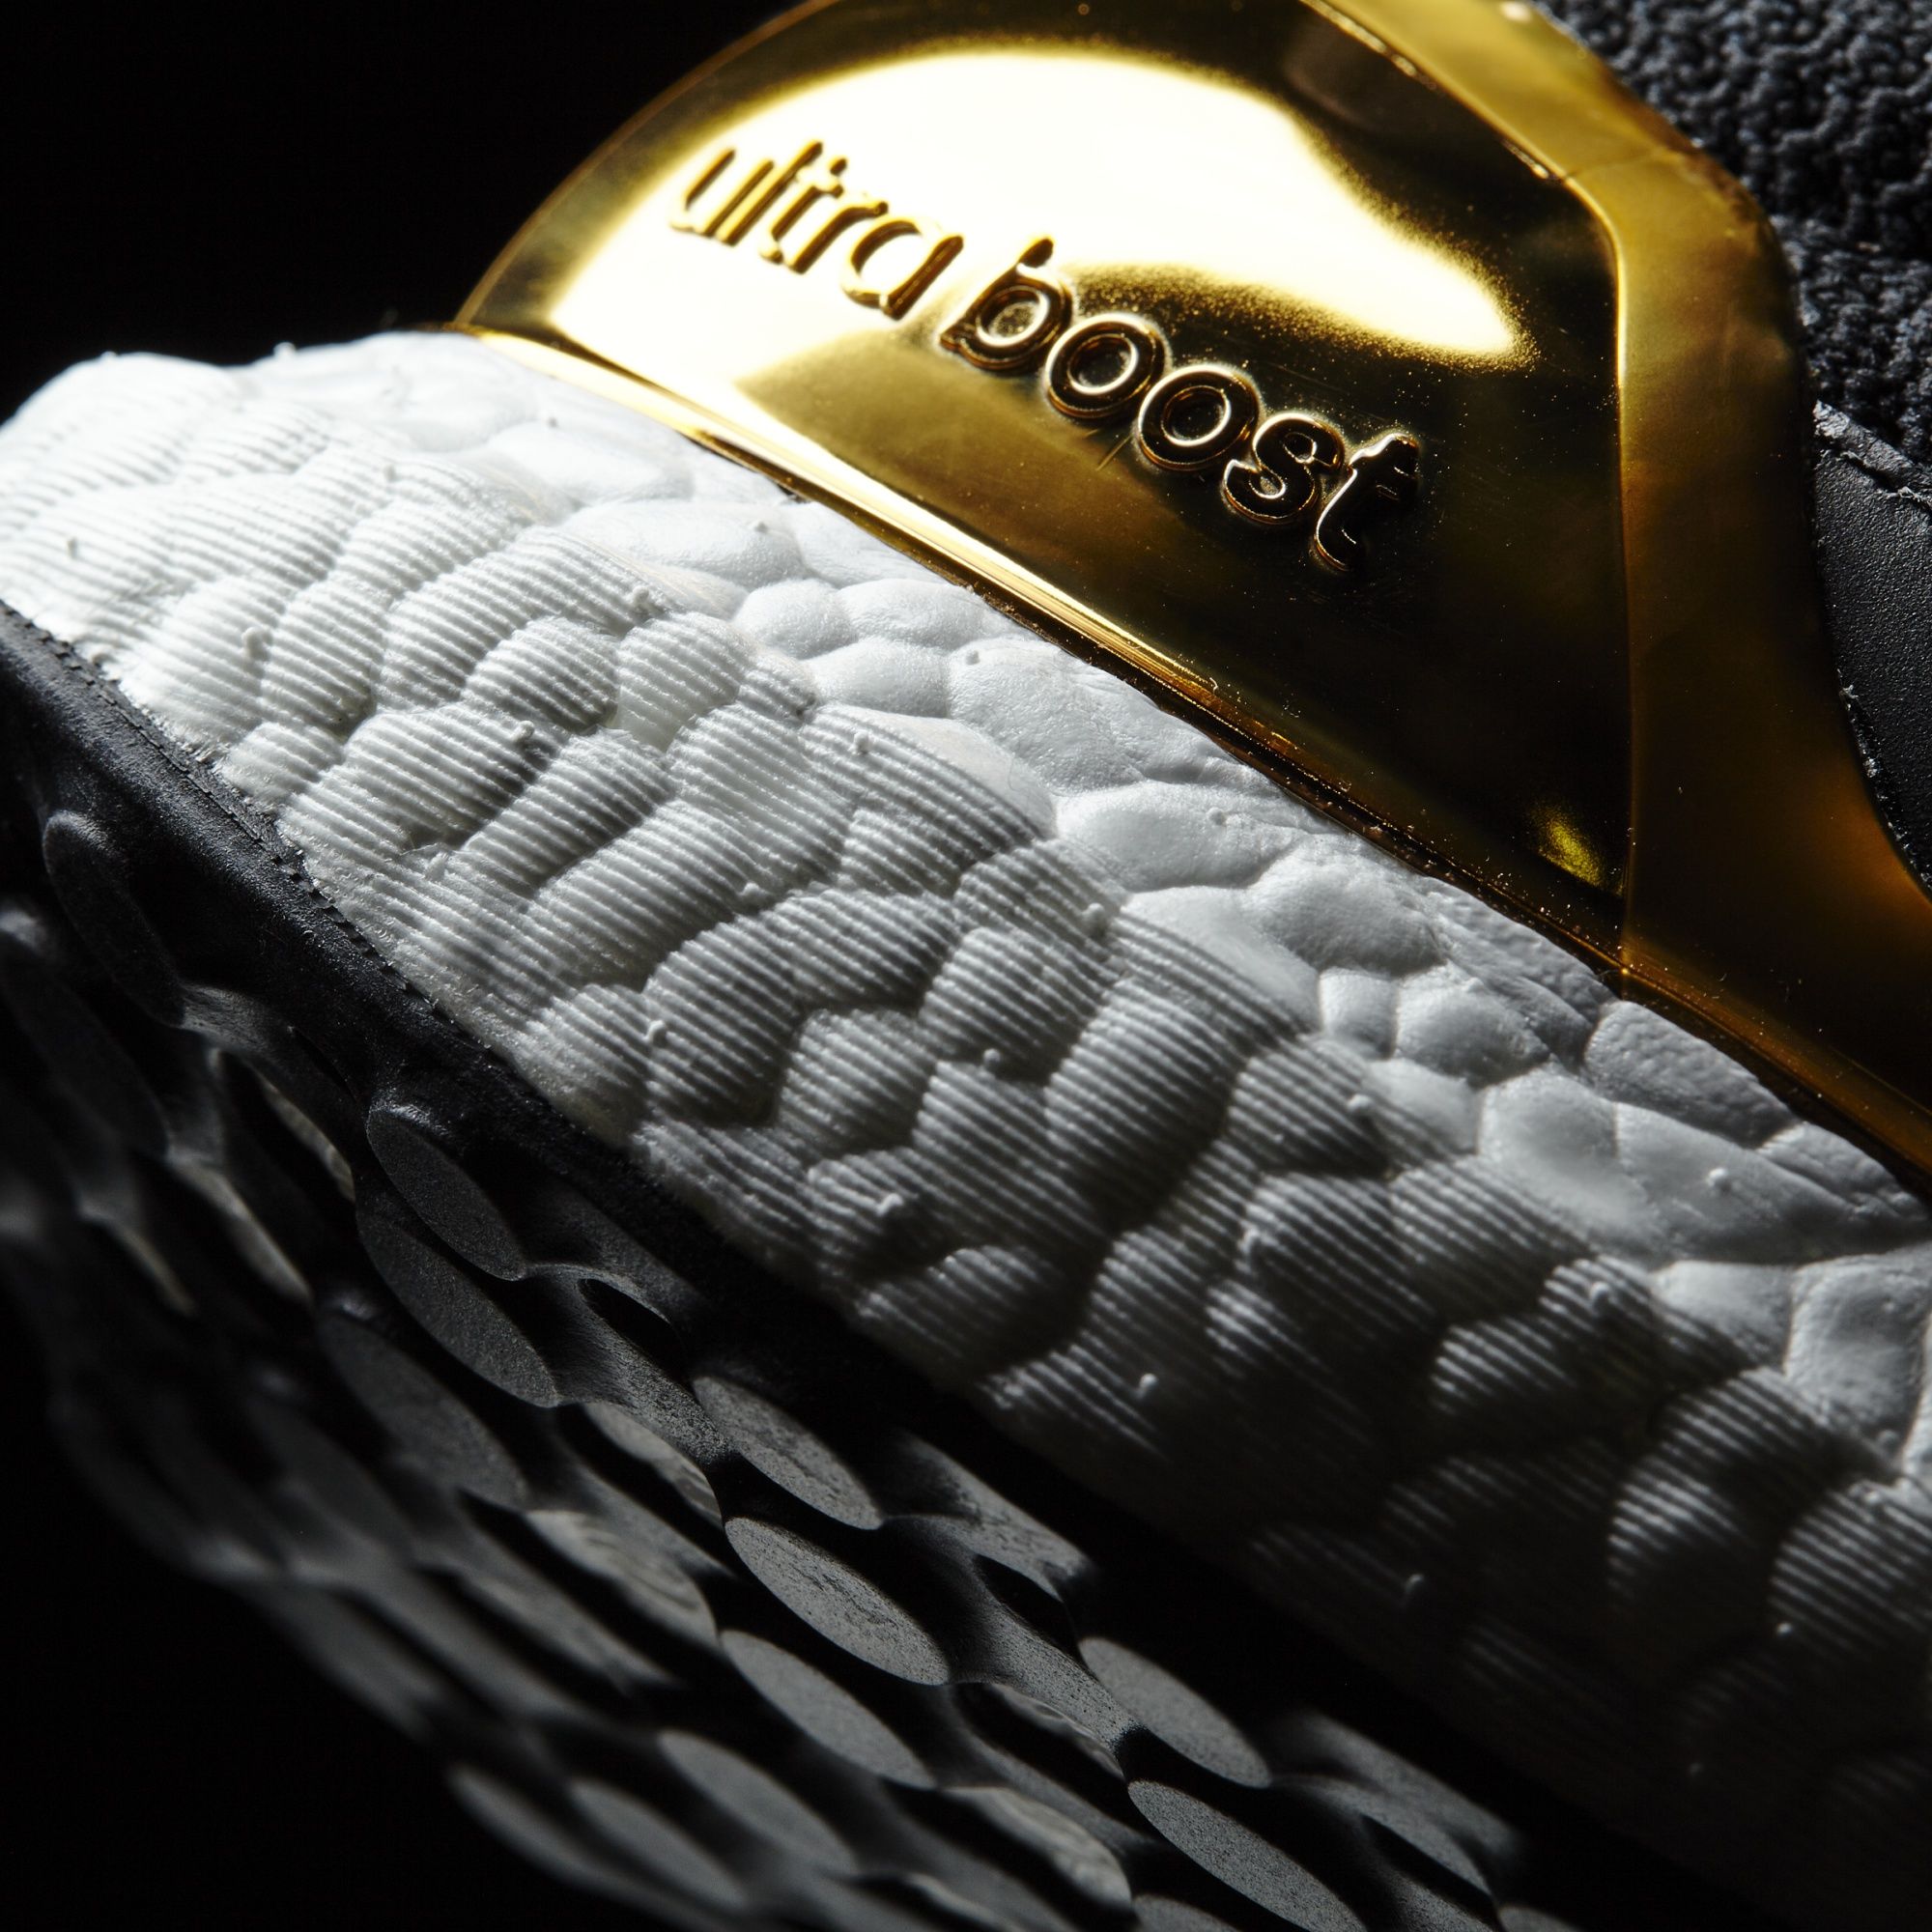 Adidas Ultra Boost LTD
Core Black / Kurz Gold Foil 